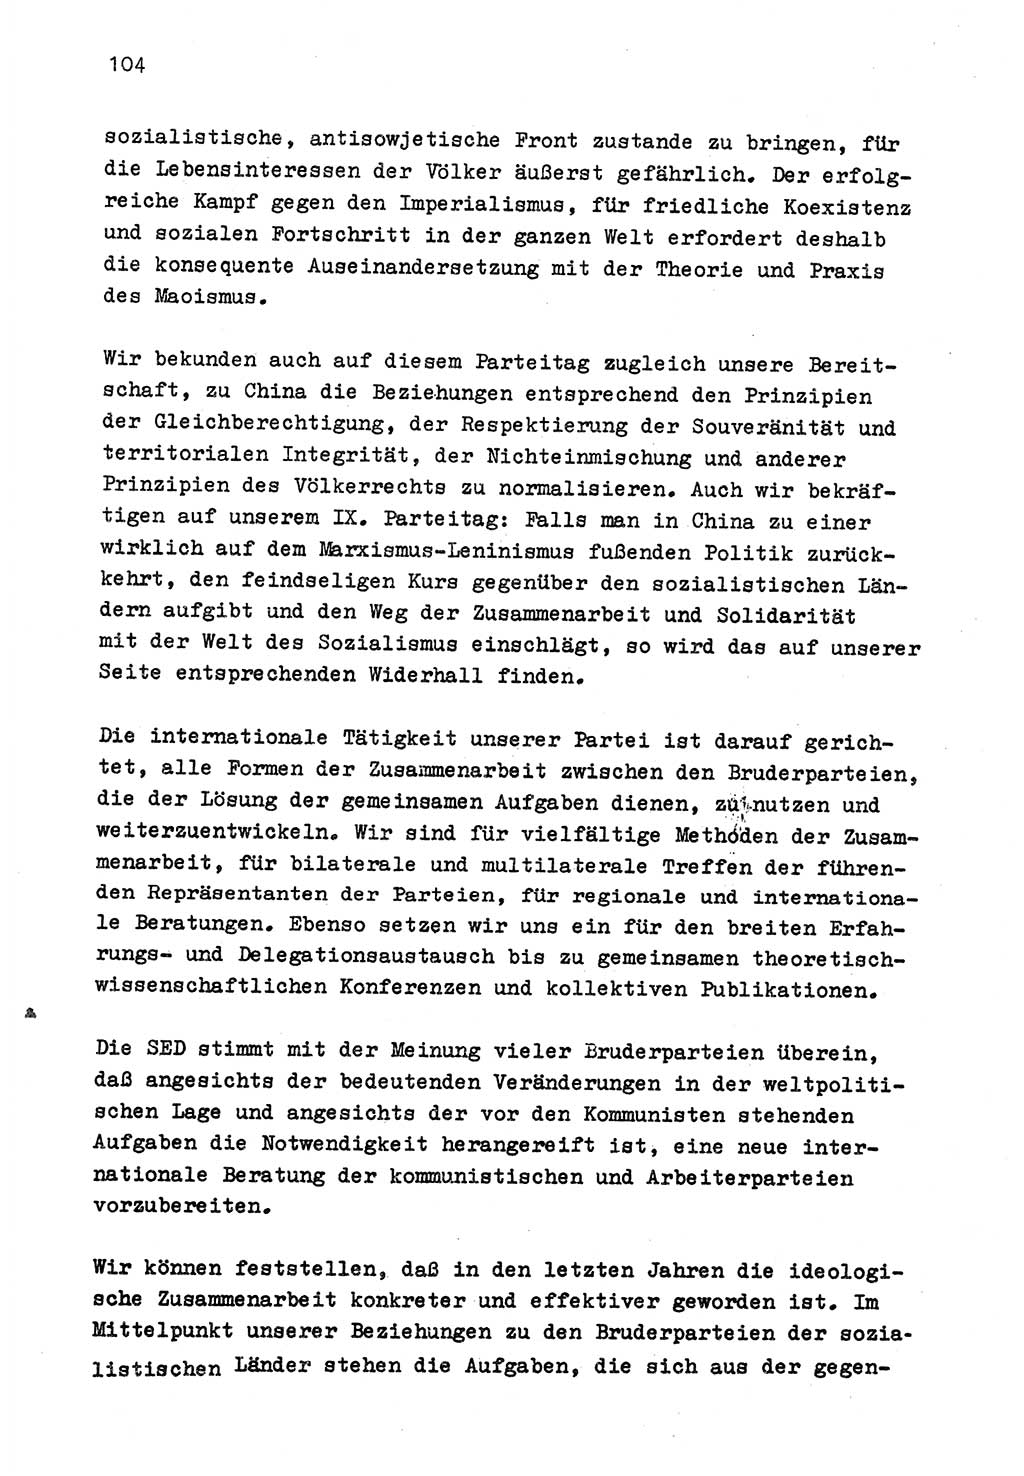 Zu Fragen der Parteiarbeit [Sozialistische Einheitspartei Deutschlands (SED) Deutsche Demokratische Republik (DDR)] 1979, Seite 104 (Fr. PA SED DDR 1979, S. 104)